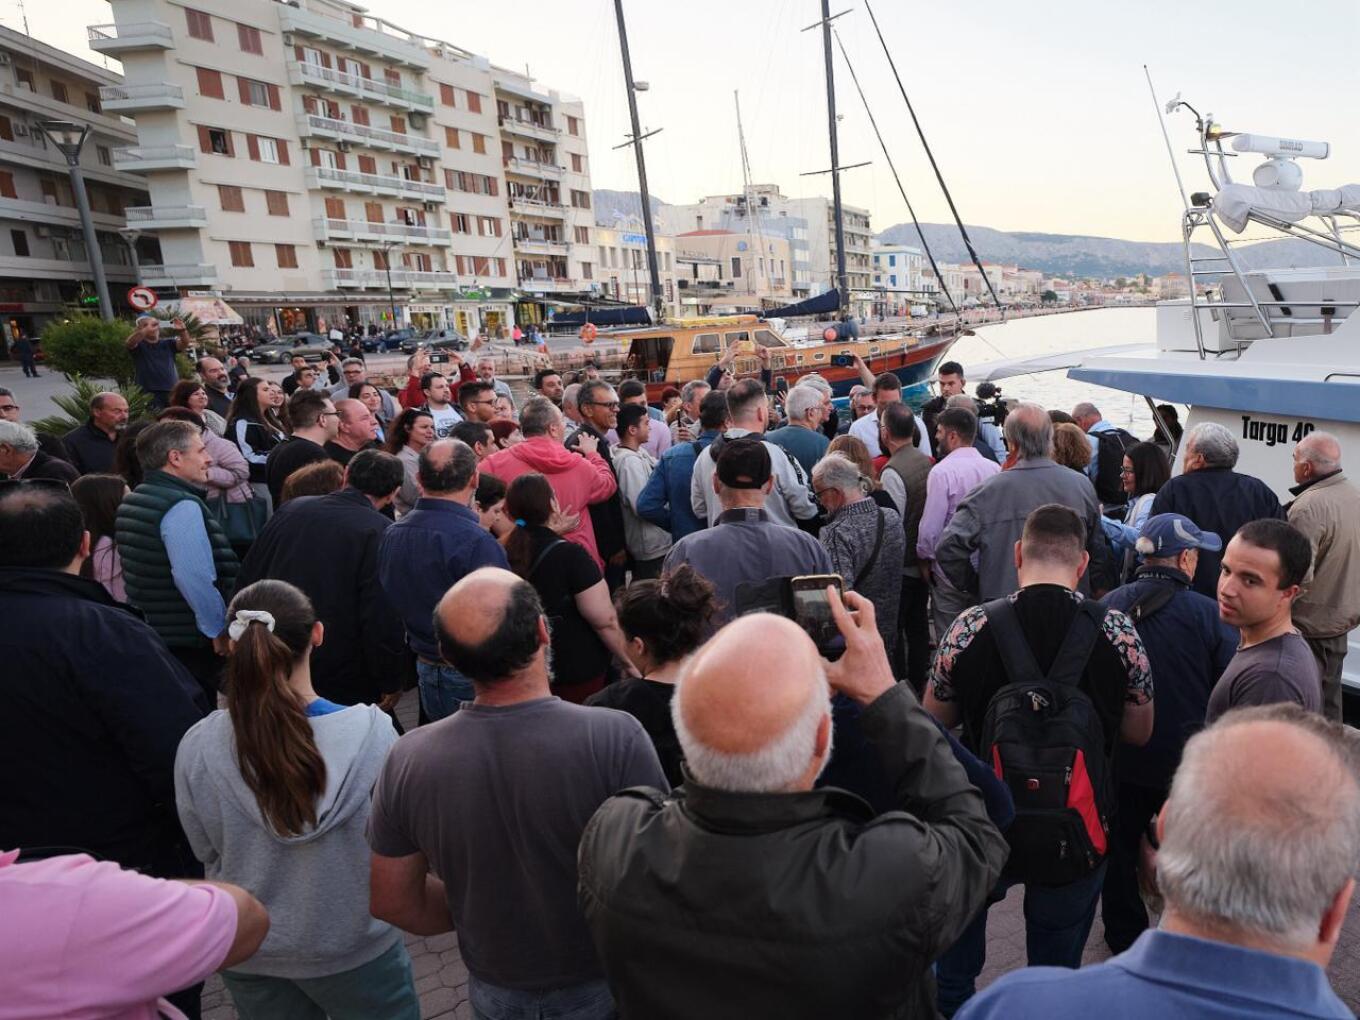 Στη Χίο έφτασε το απόγευμα της Παρασκευής ο Στέφανος Κασσελάκης, στο πλαίσιο της πολυήμερης περιοδείας του στα νησιά του Αιγαίου. Ο πρόεδρος του ΣΥΡΙΖΑ μετά την άφιξή του στο λιμάνι της Χίου μετέβη στο «Ομήρειο» Πολιτιστικό Κέντρο για να απευθύνει σύντομο χαιρετισμό στην πανελλαδική συνεδρίαση της Κεντρικής Ένωσης Επιμελητηρίων Ελλάδας, που λαμβάνει χώρα σήμερα στο νησί. Ο αρχηγός της Αξιωματικής Αντιπολίτευσης επισκέφτηκε τη Ένωση Μαστιχοπαραγωγών Χίου και έπειτα είχε συνάντηση στο δημαρχείο με τον δήμαρχο